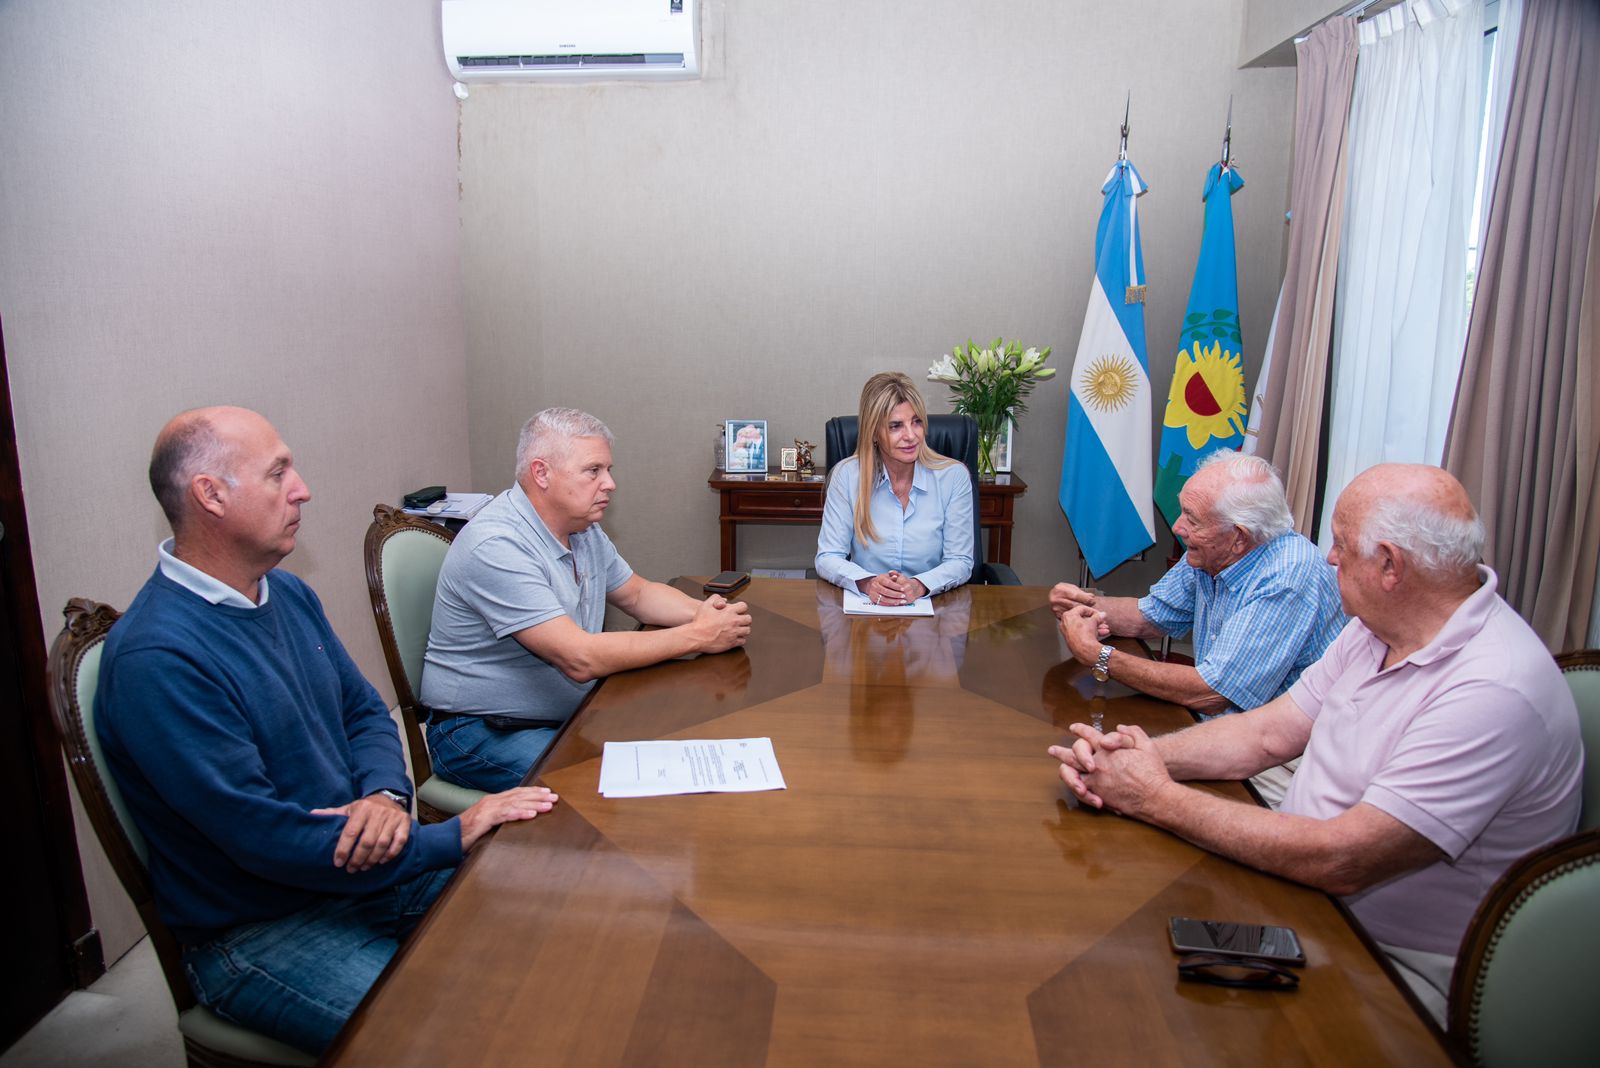 Carboni y Edesur suscribieron un acuerdo para mejorar la provisión de energía en Uribelarrea y El Taladro.